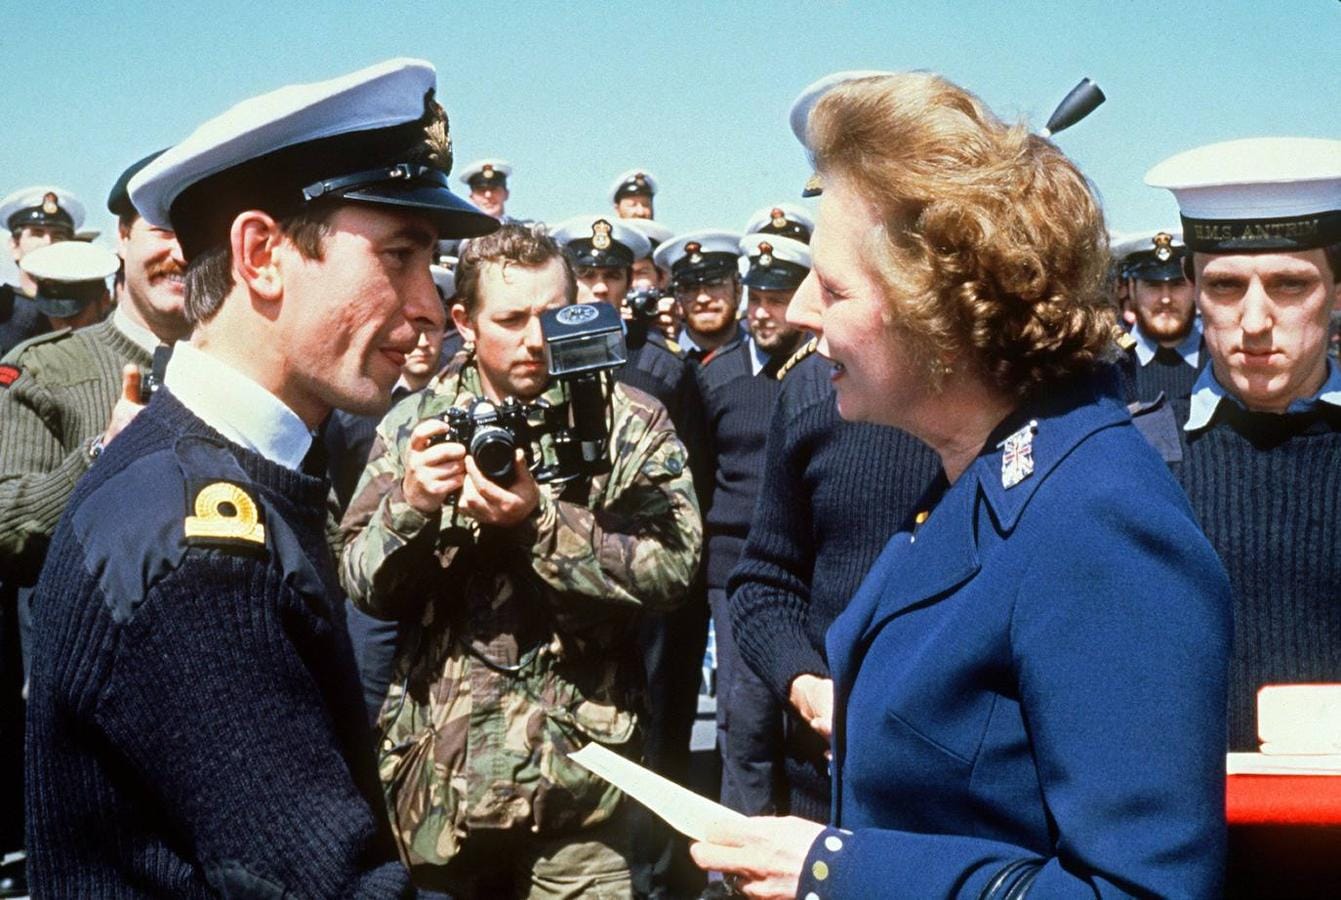 La guerra de las Malvinas. El 2 de abril de 1982, las tropas argentinas invadieron, por orden de la Junta Militar, las Islas Malvinas. La respuesta de Thattcher fue inmediata: enviar una ingente flota naval que logró ganar el pulso en apenas dos meses, lo que aseguraba la reelección de la primer ministro.